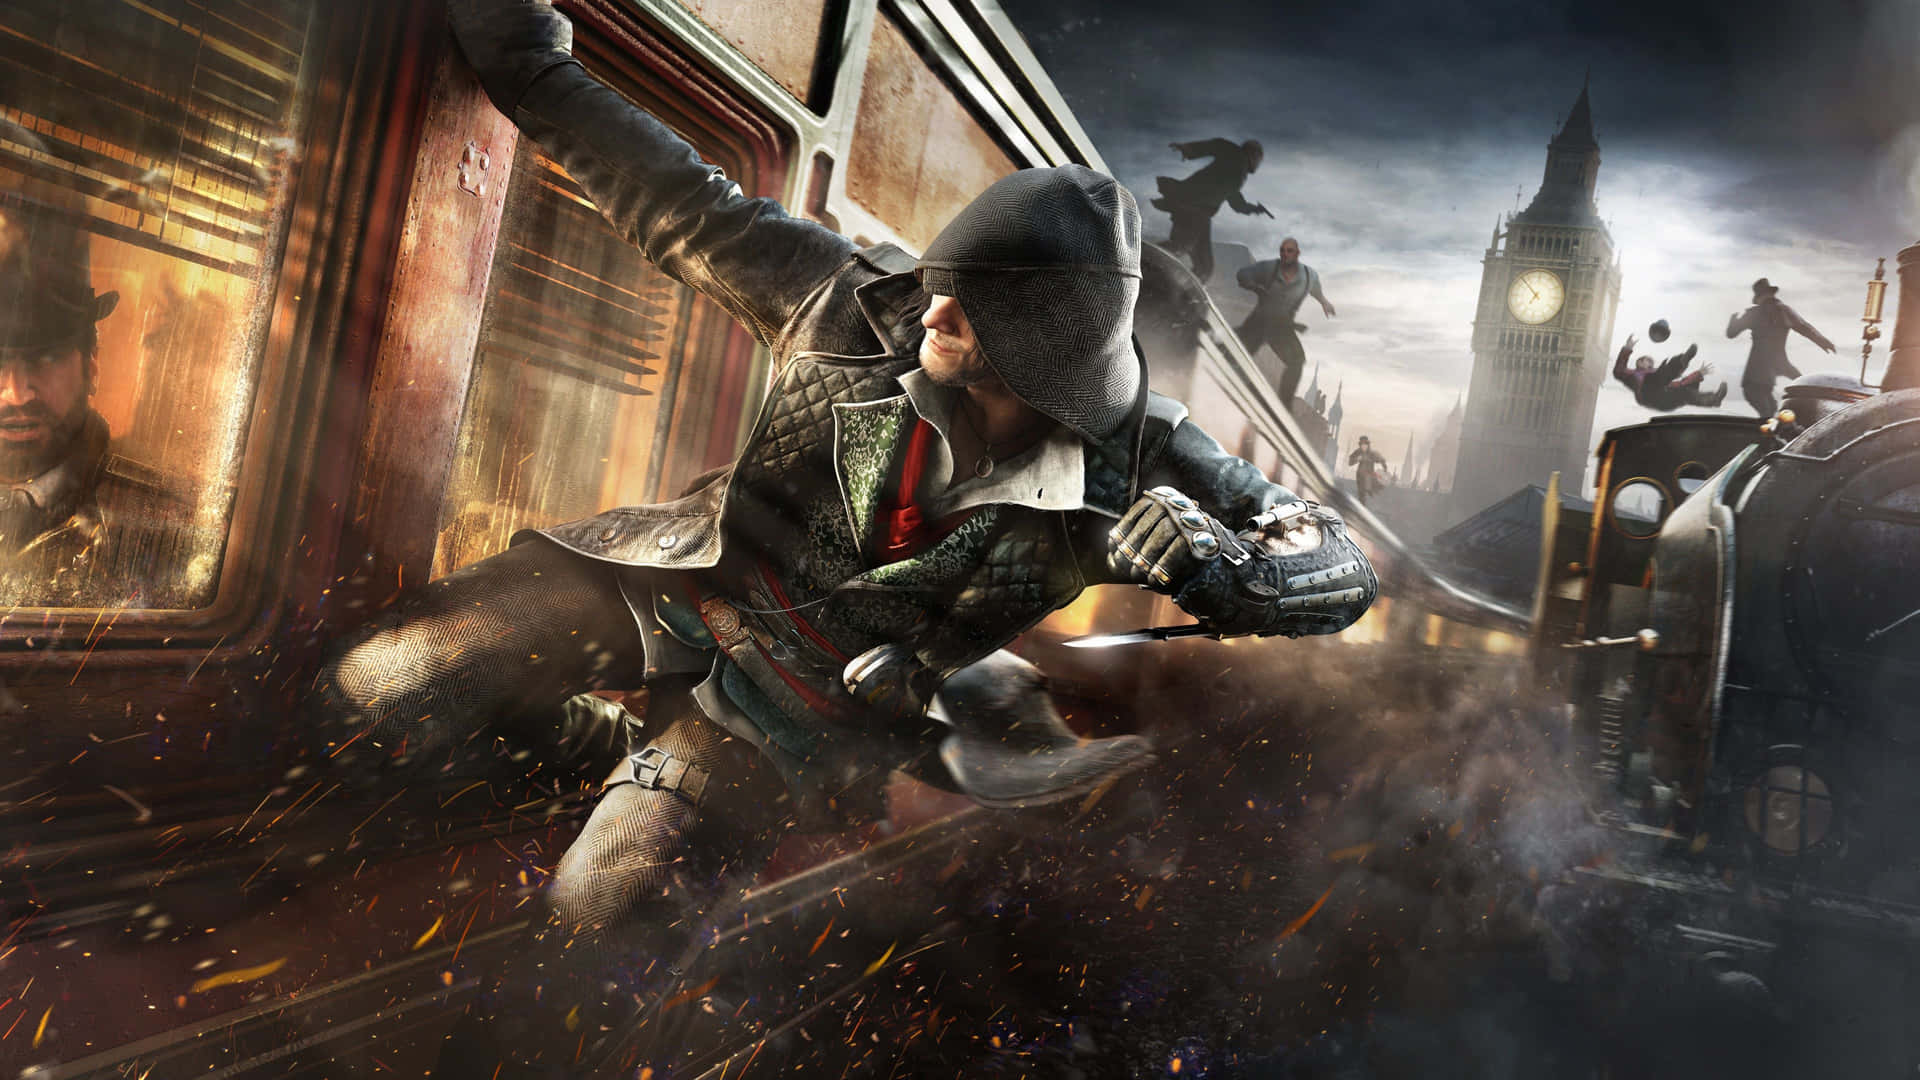 Assassin's Creed Valhalla Eivor 4K Wallpaper – SyanArt Station